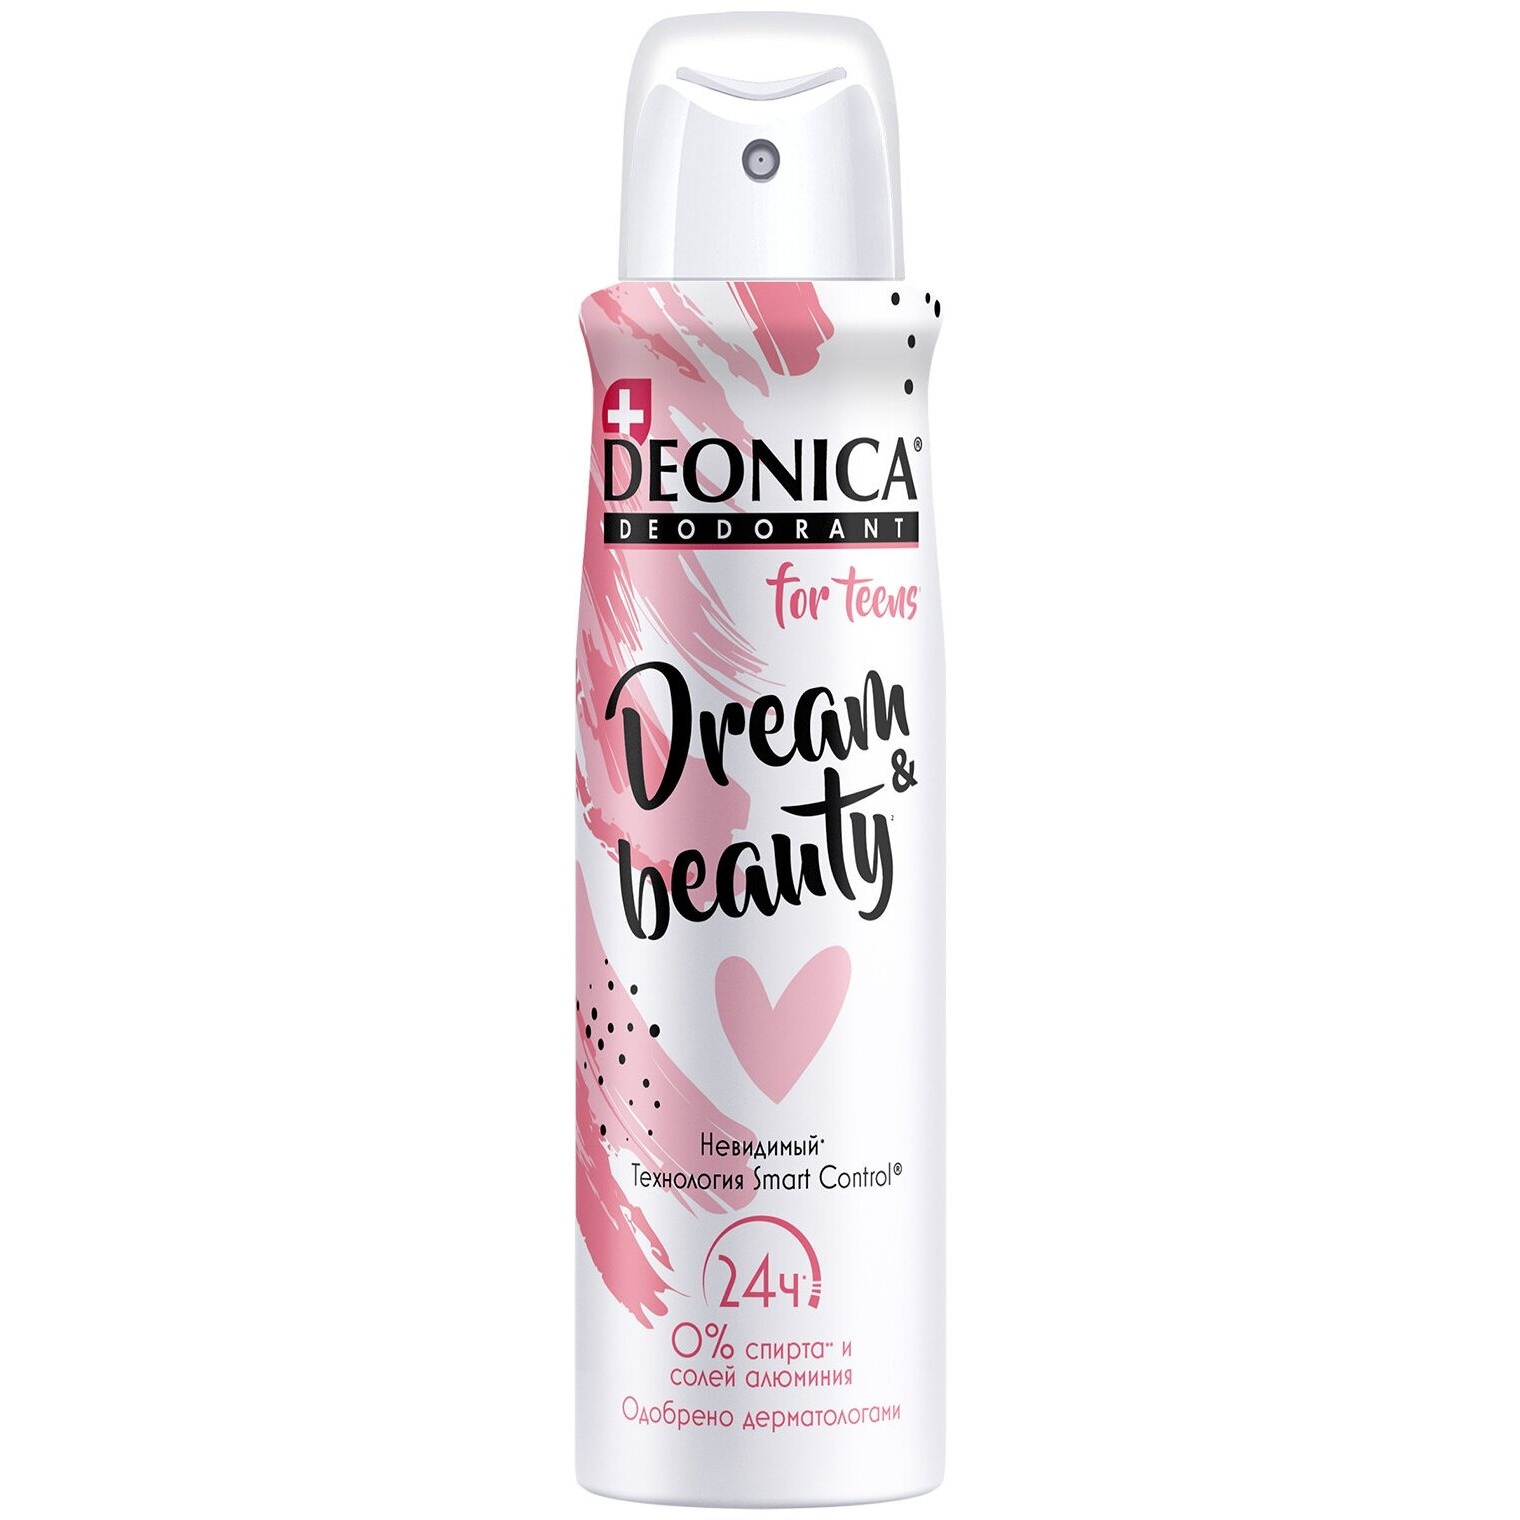 Дезодорант спрей Прелесть DREAM & BEAUTY 150 мл дезодорант deonica for teens pink rush для девочек спрей 125 мл